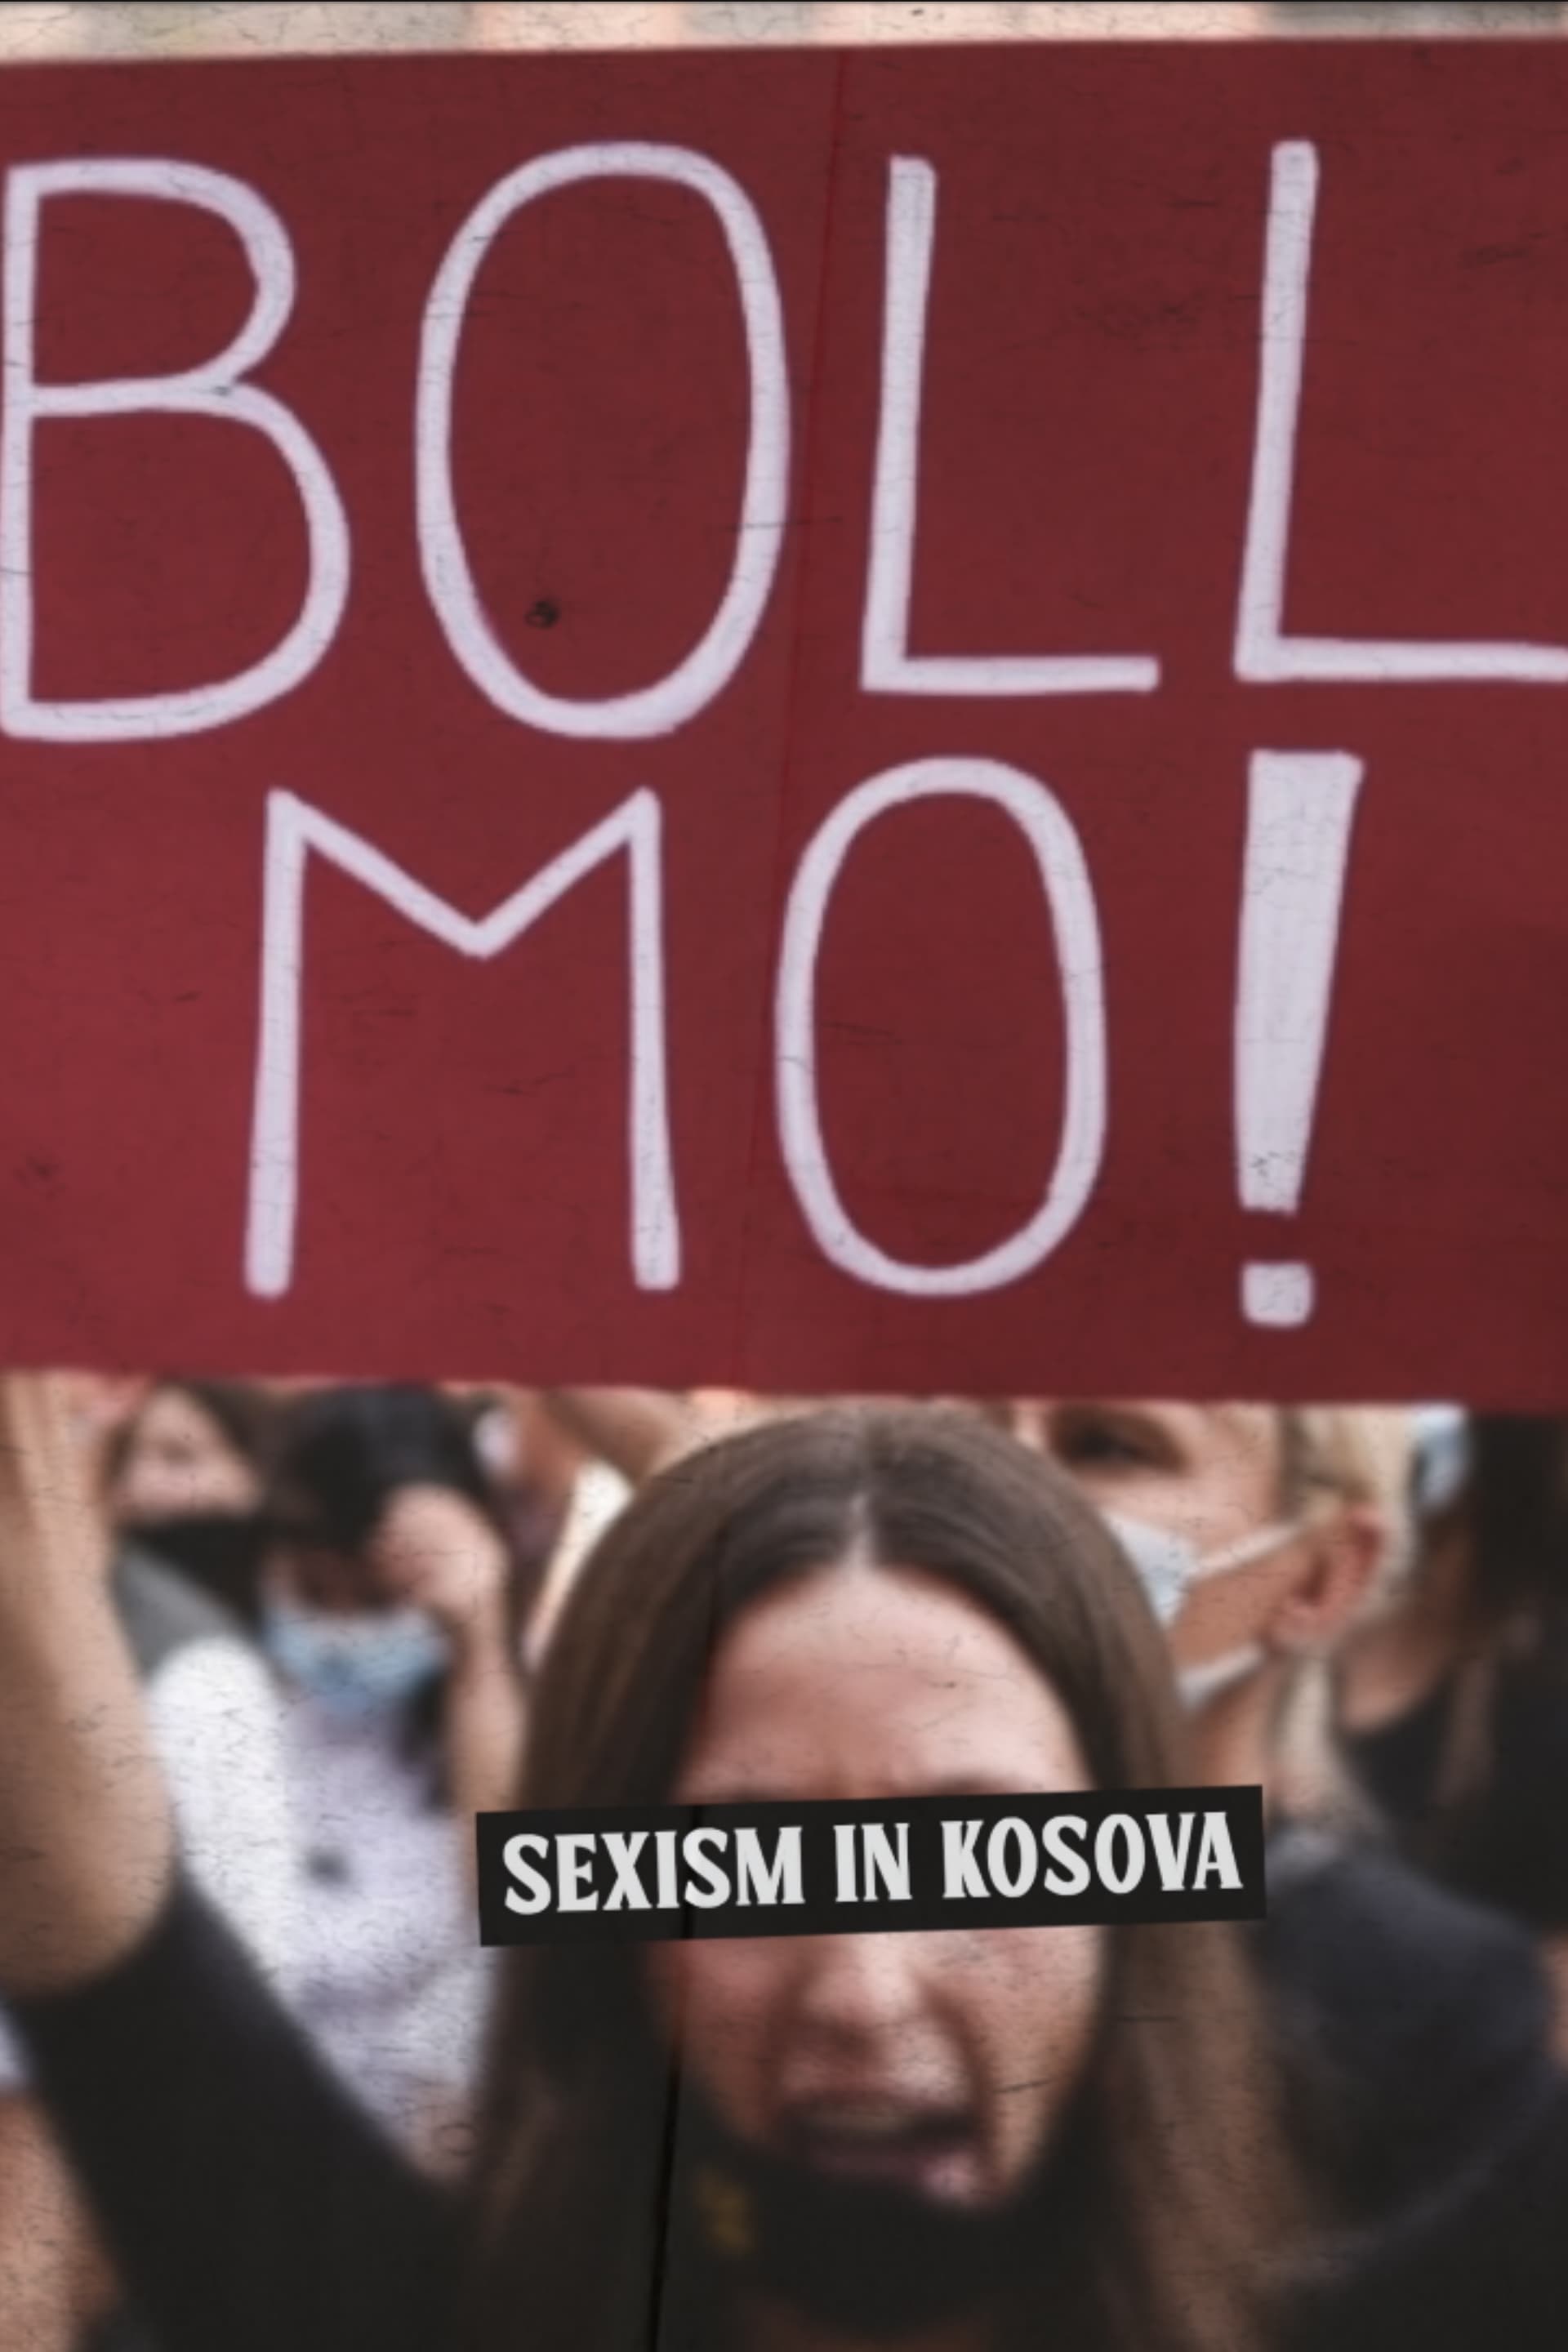 Boll Mo: Sexism in Kosova